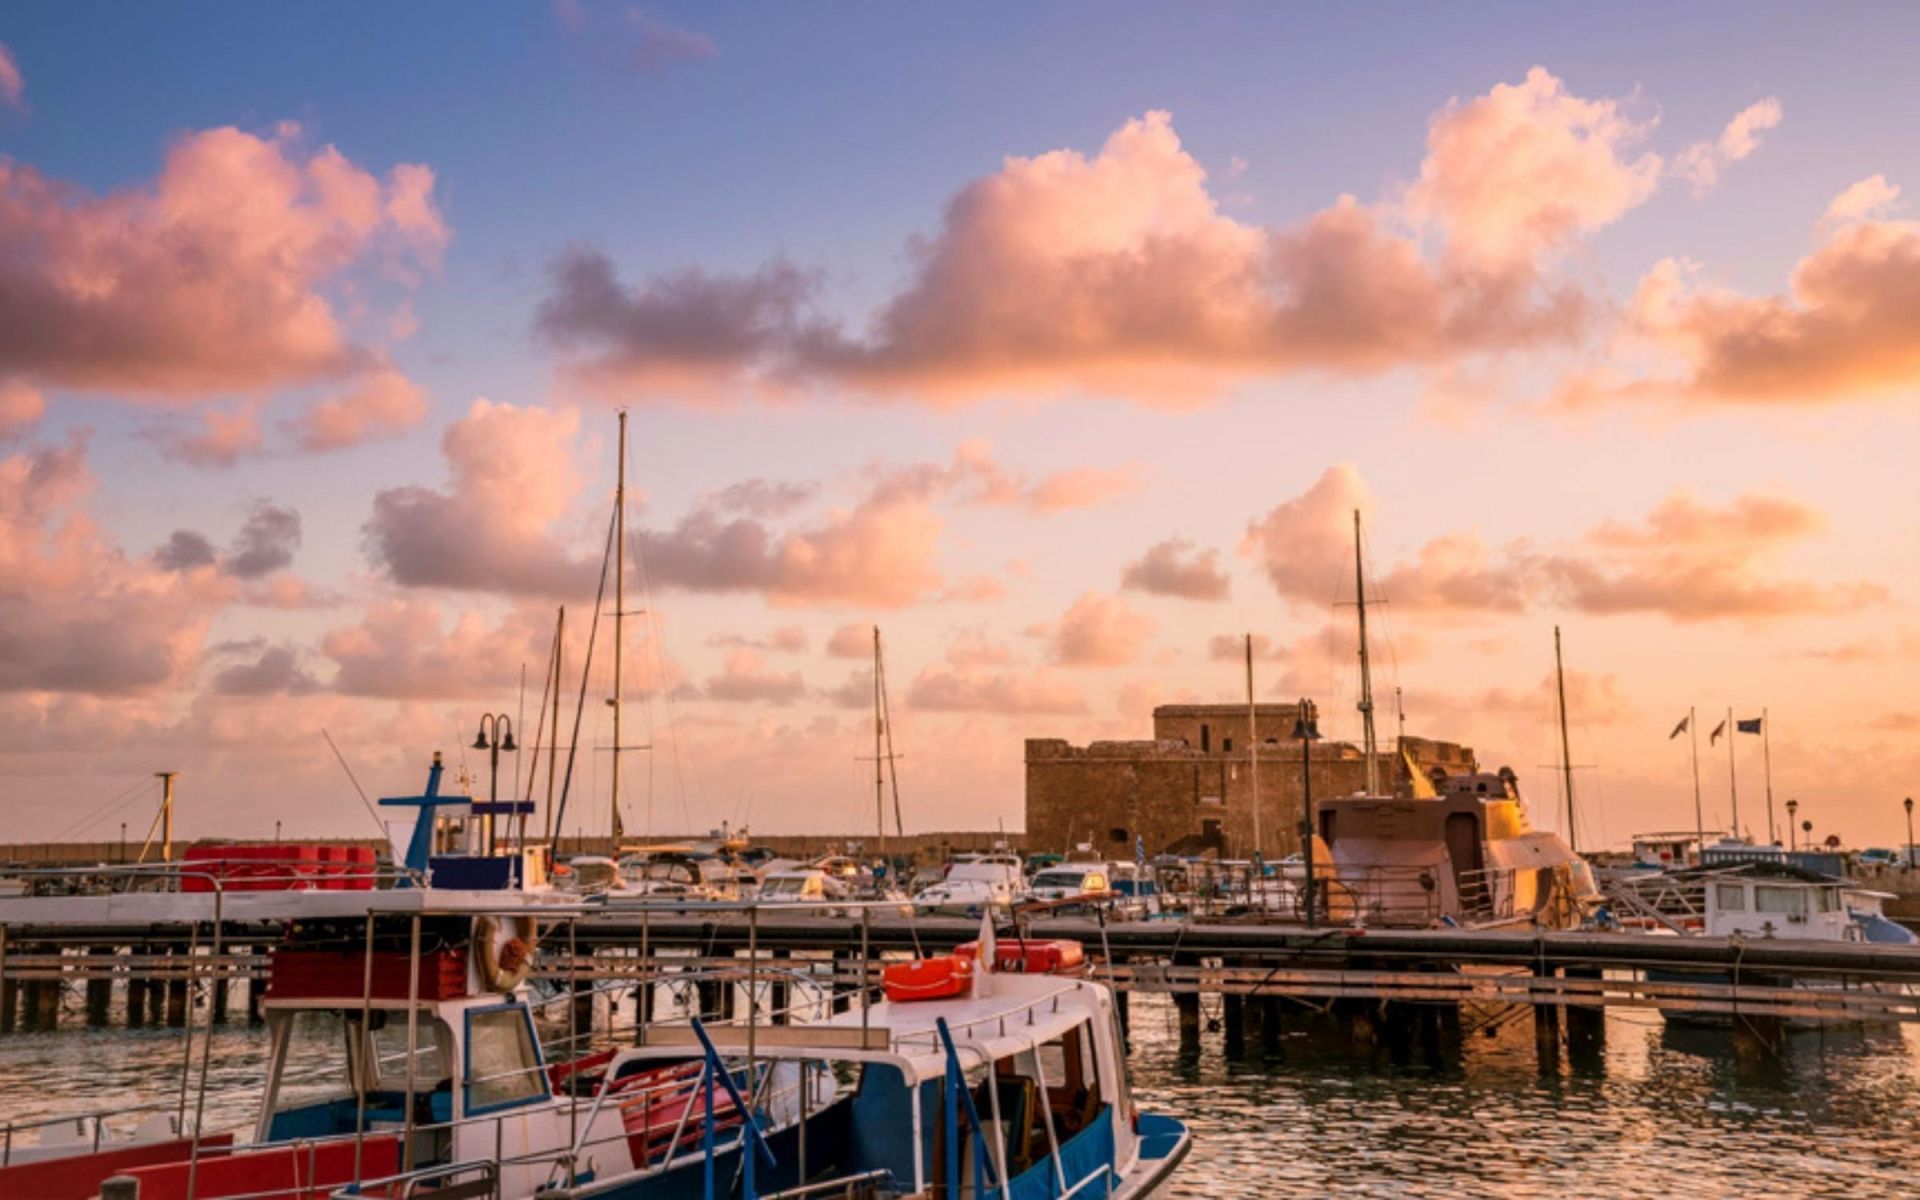 Cyprus Kato Paphos Medieval Castle & Harbour